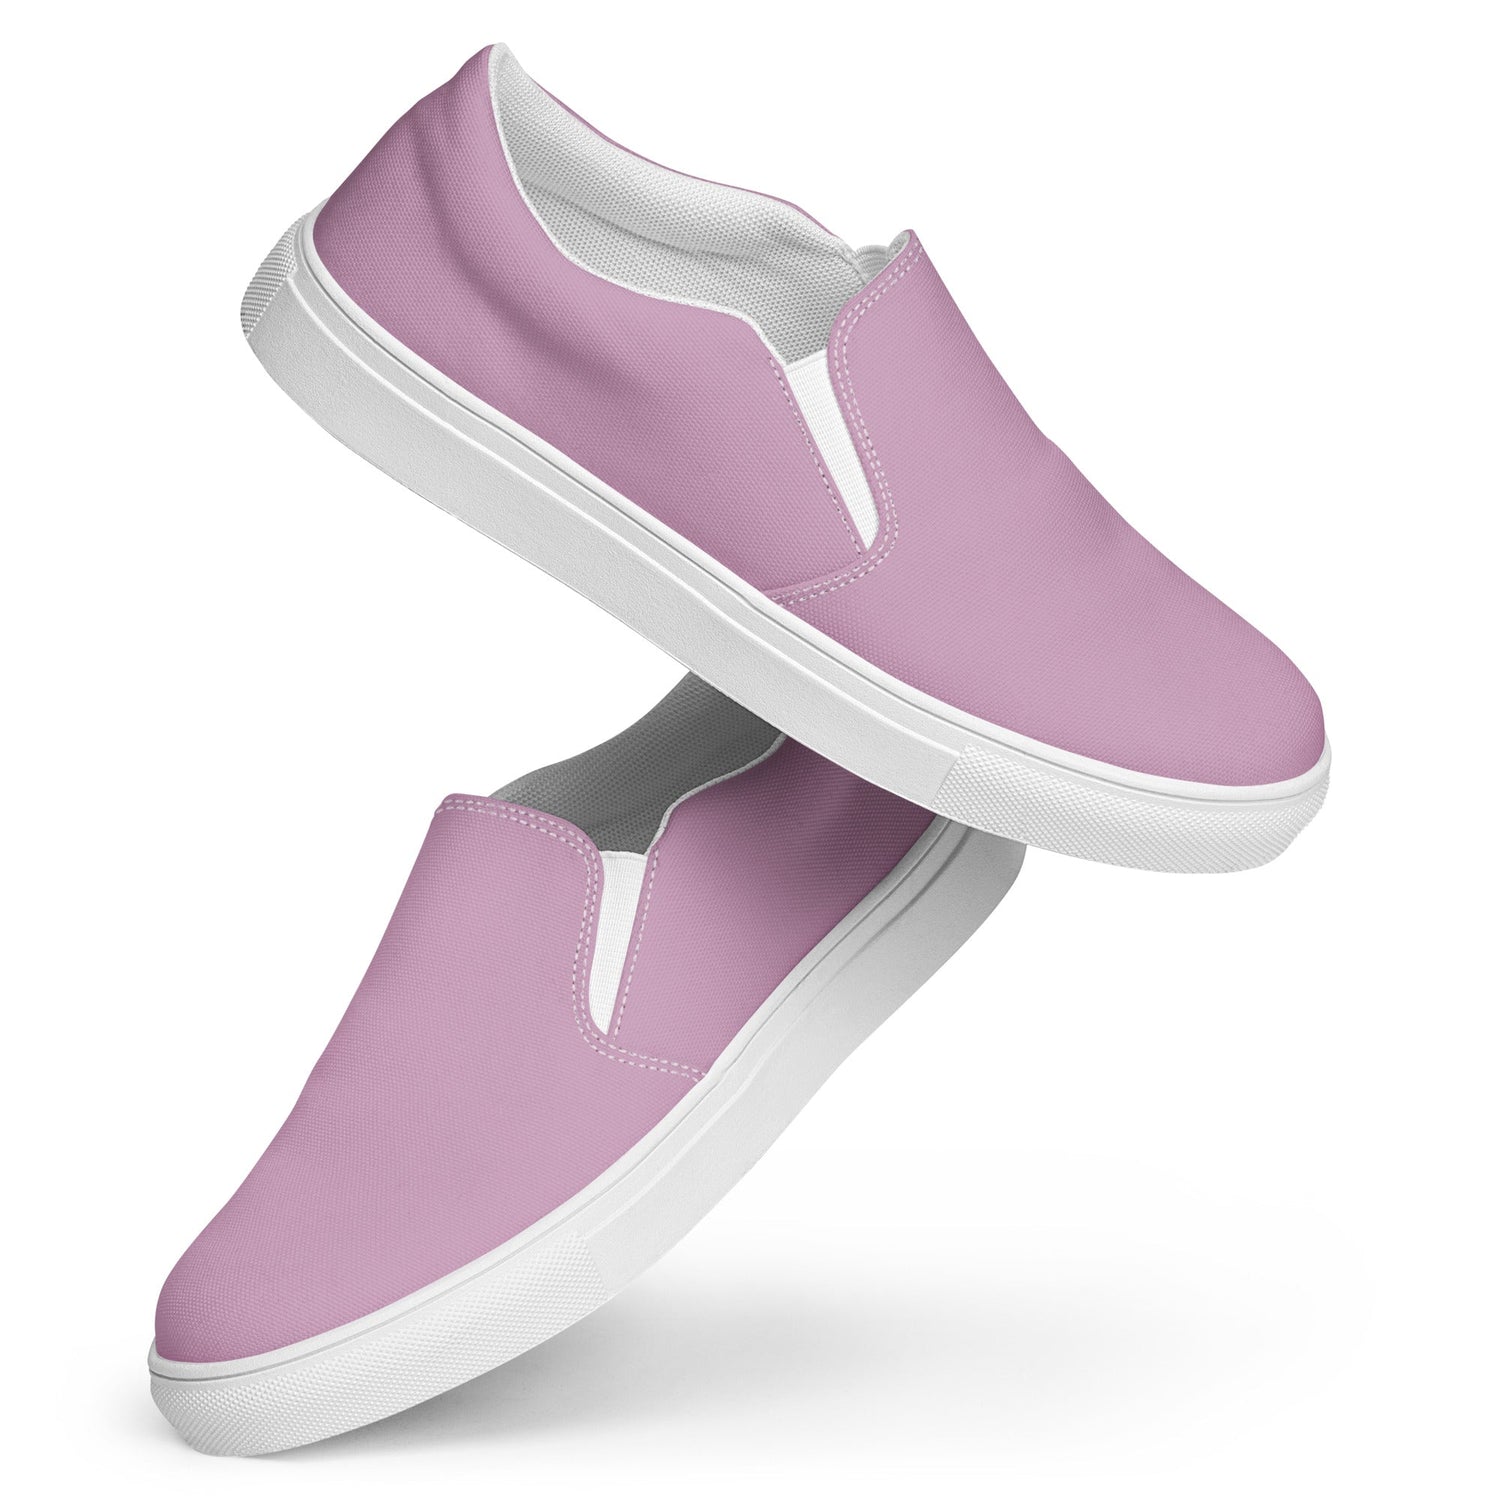 klasneakers Women’s slip-on canvas shoes - Faded Bubblegum